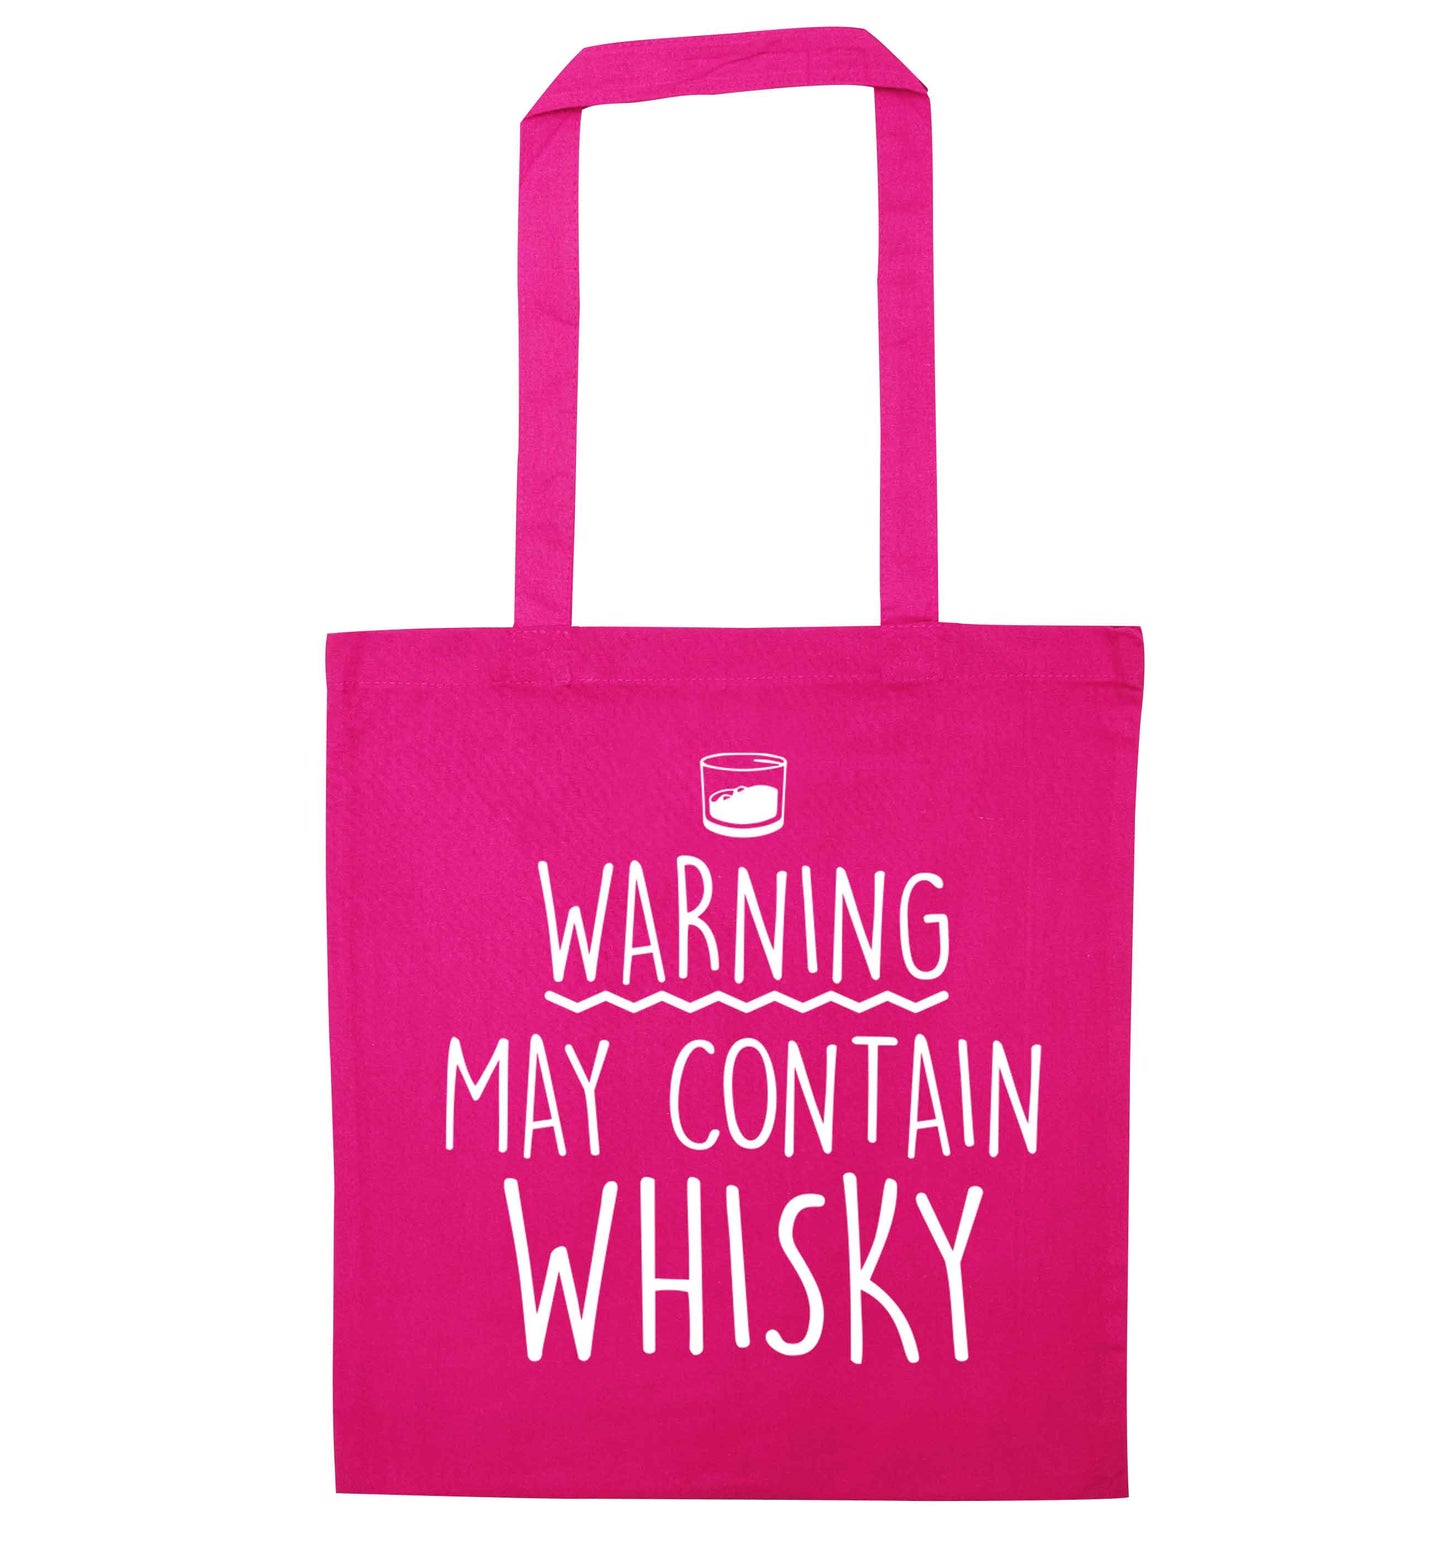 Warning may contain whisky pink tote bag